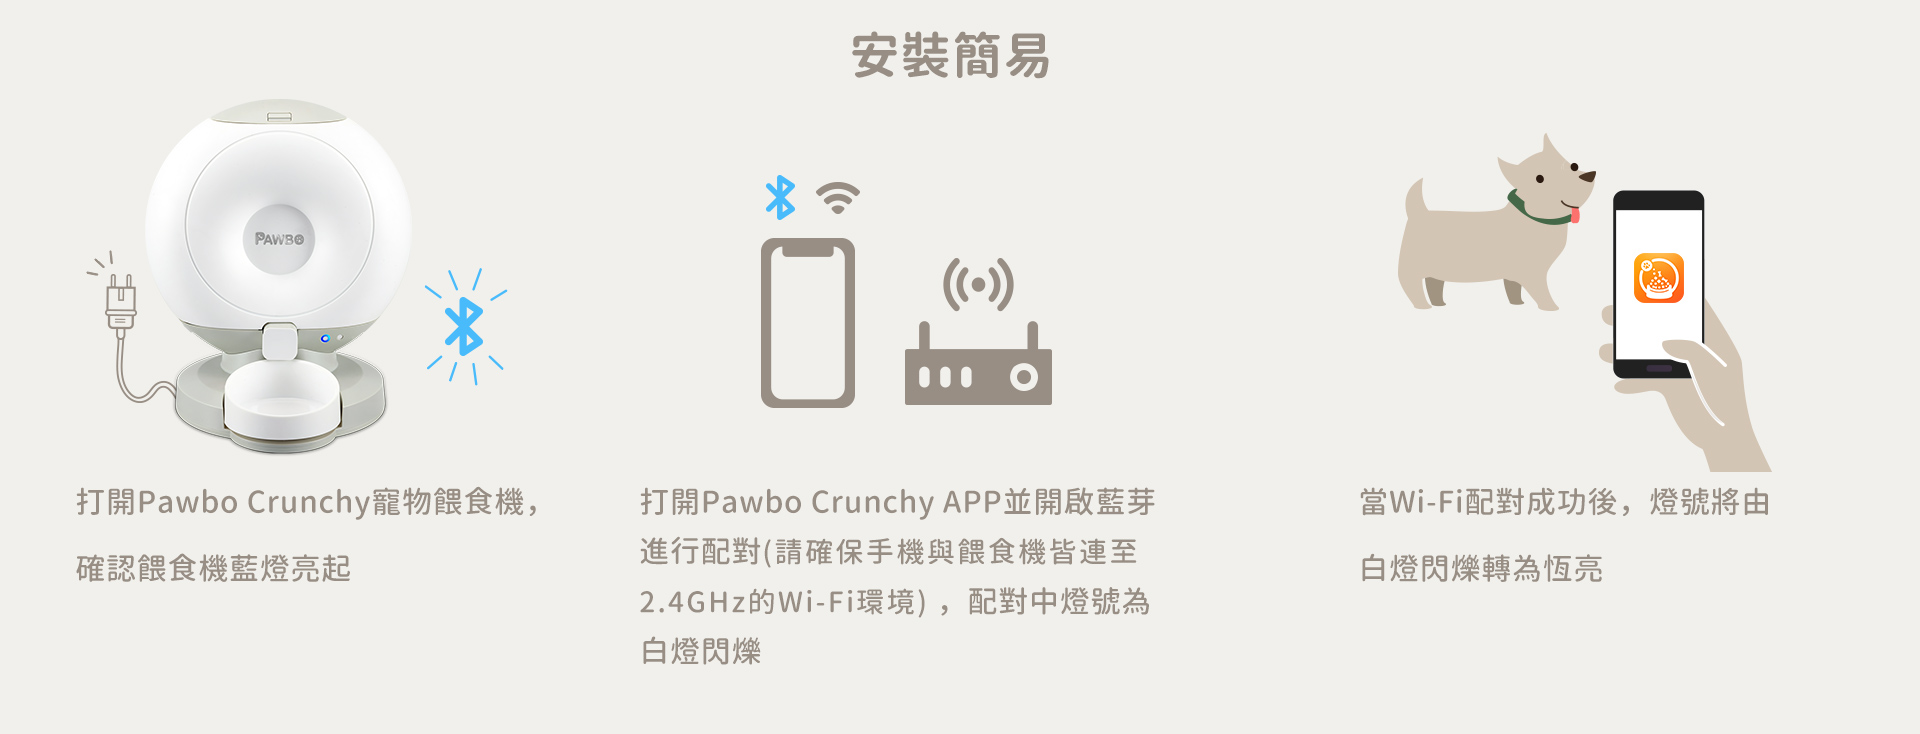 打開Pawbo Crunchy寵物餵食機，確認餵食機藍燈亮起  打開Pawbo Crunchy APP並開啟藍芽進行配對(請確保手機與餵食機皆連至2.4GHz的Wi-Fi環境) ，配對中燈號為白燈閃爍 當Wi-Fi配對成功後，燈號將由白燈閃爍轉為恆亮